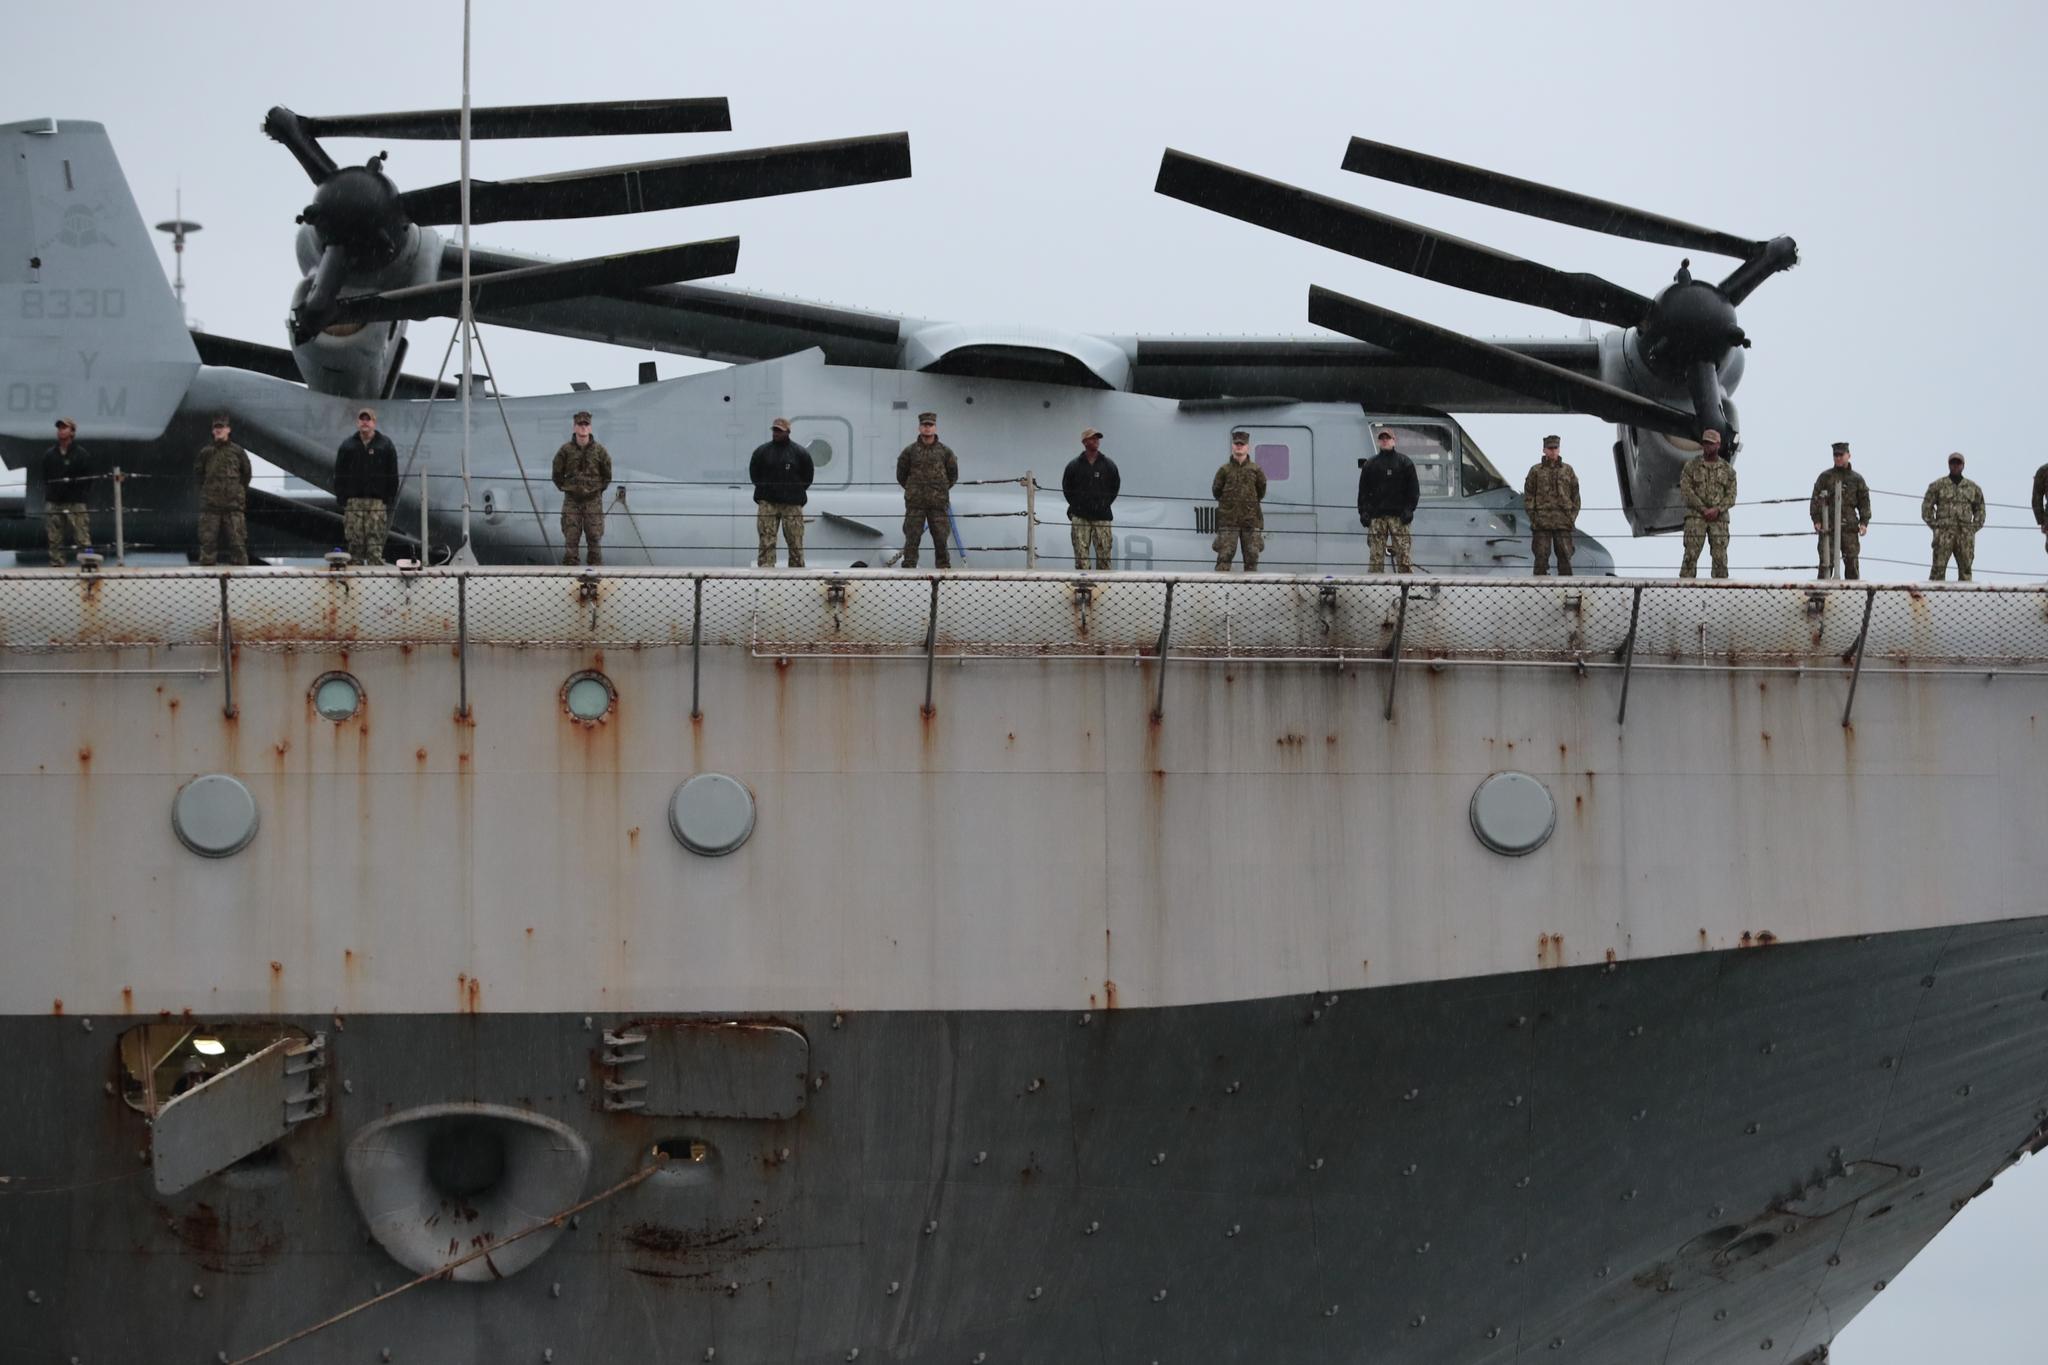 Iwo Jima har vært i Norge de siste ukene i forbindelse med den pågående NATO-øvelsen. Tirsdag ankom det Oslo.